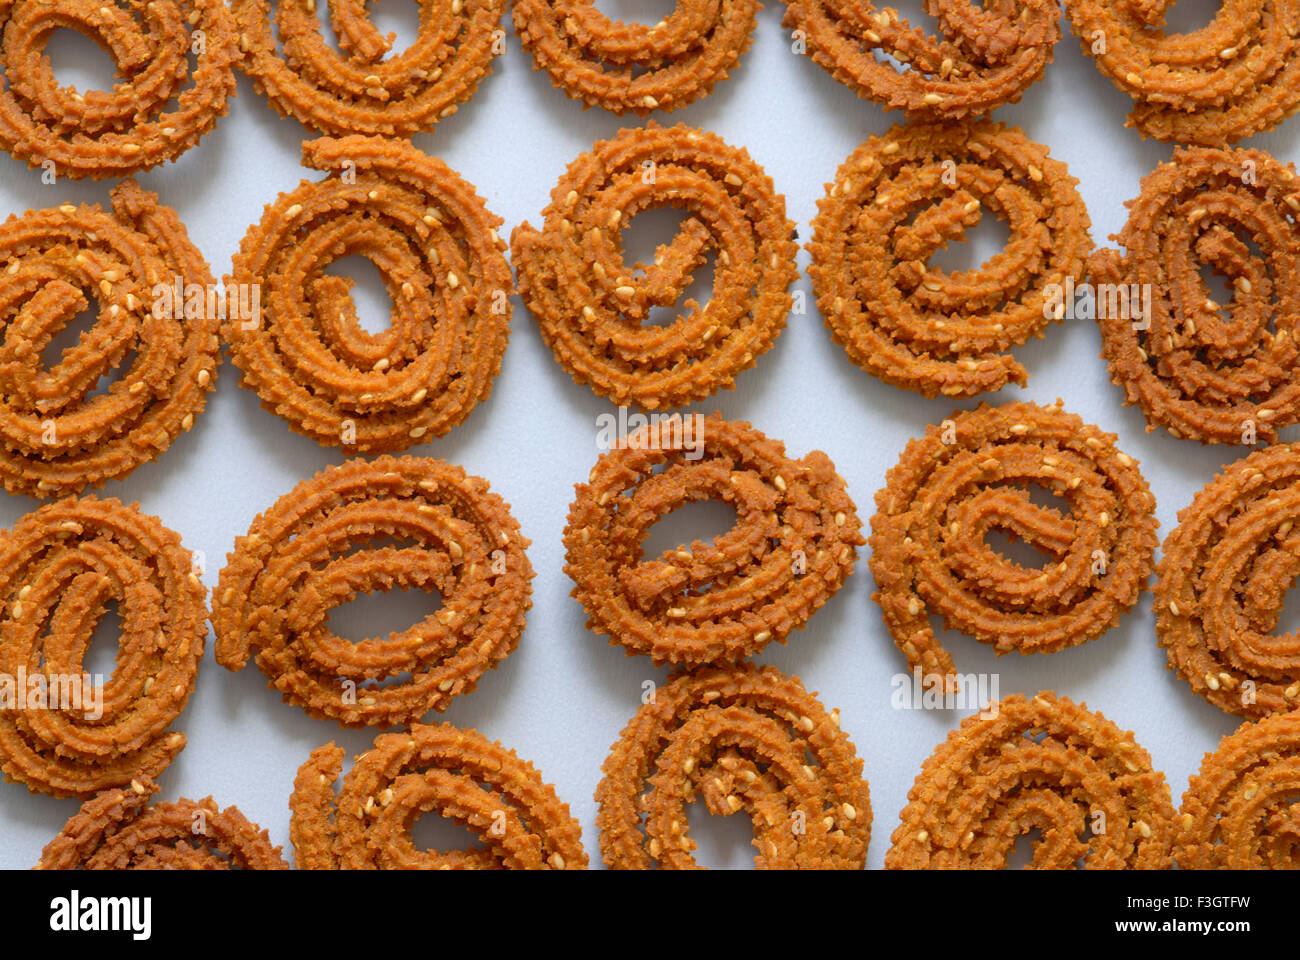 Chakli o Murukku un saporito e fritto spuntino indiano a forma di spirale con una superficie spiked, India, Asia Foto Stock